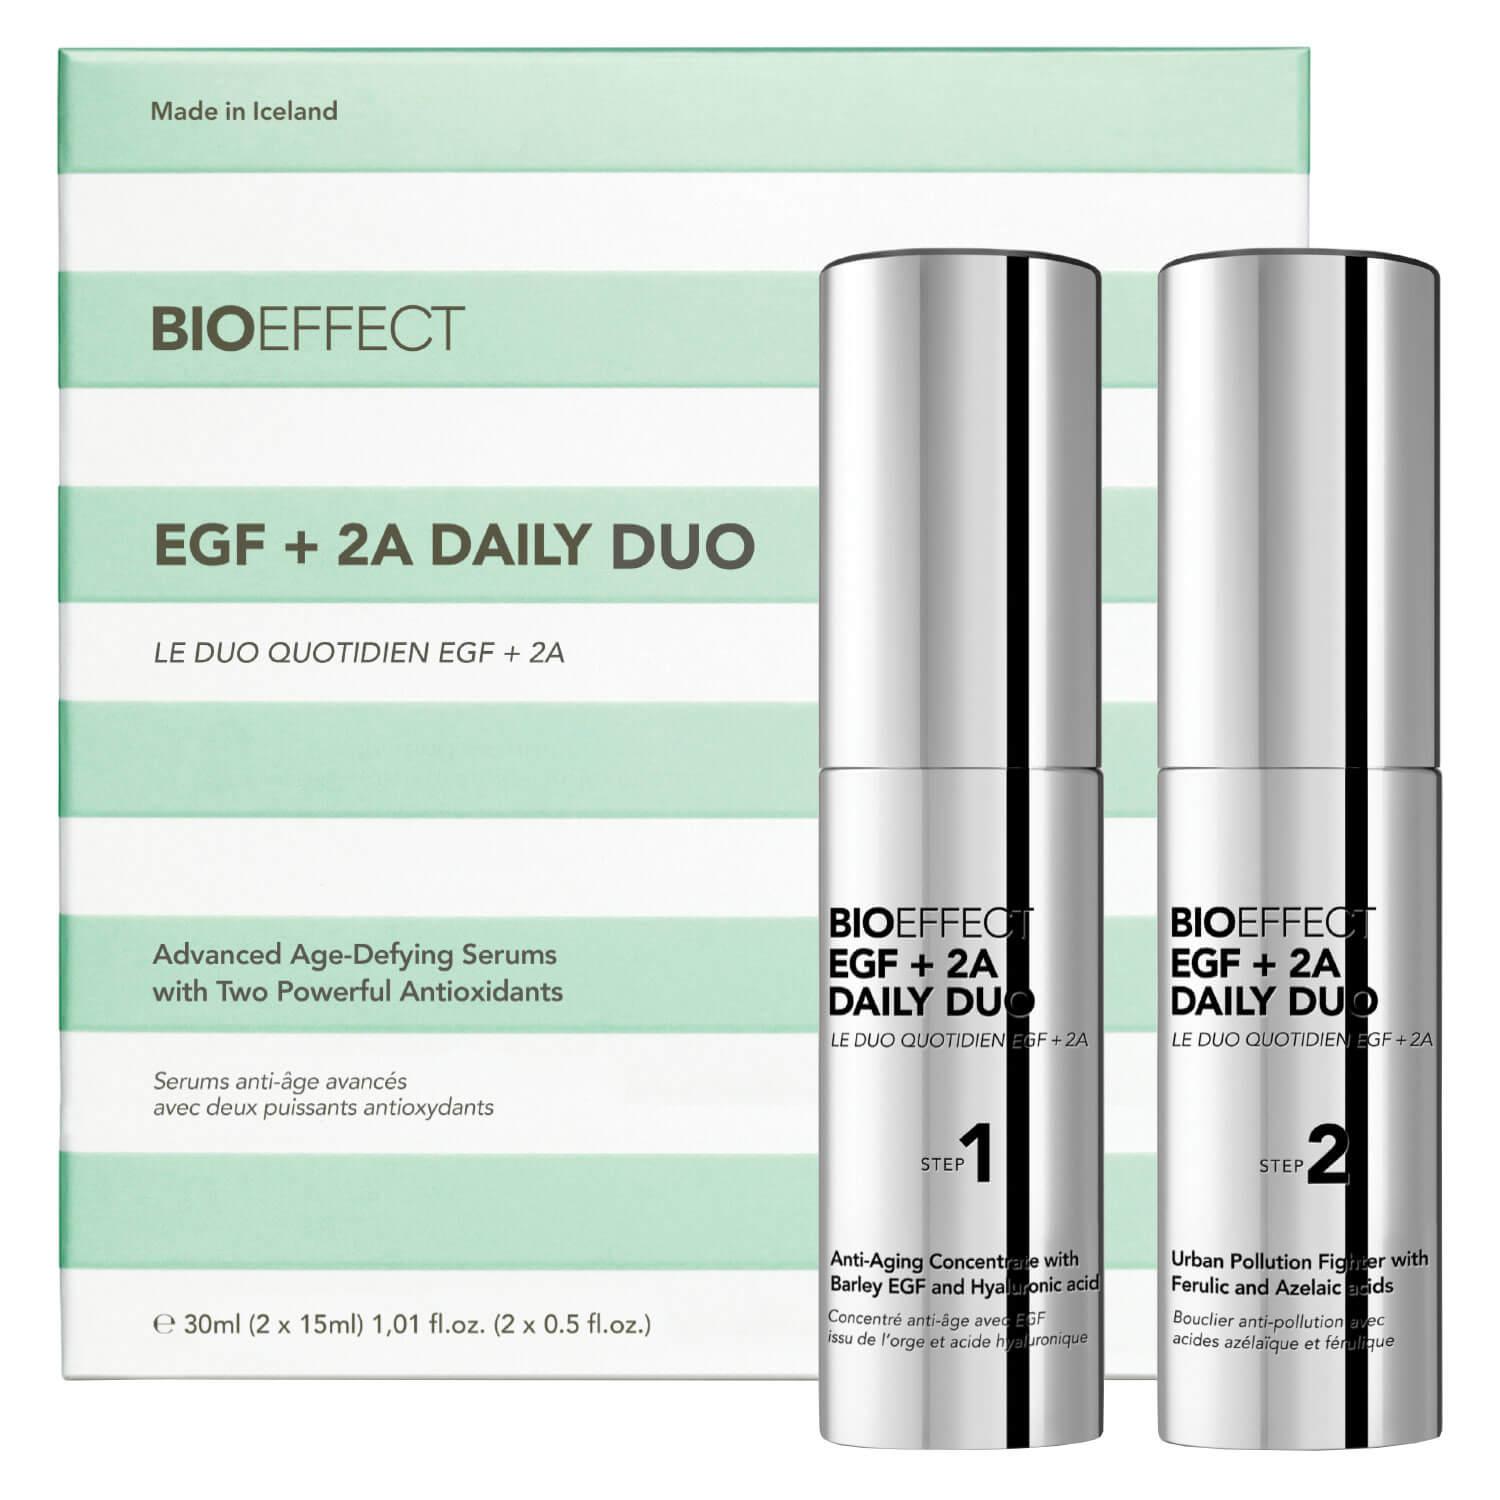 BIOEFFECT - EGF + 2A DAILY DUO